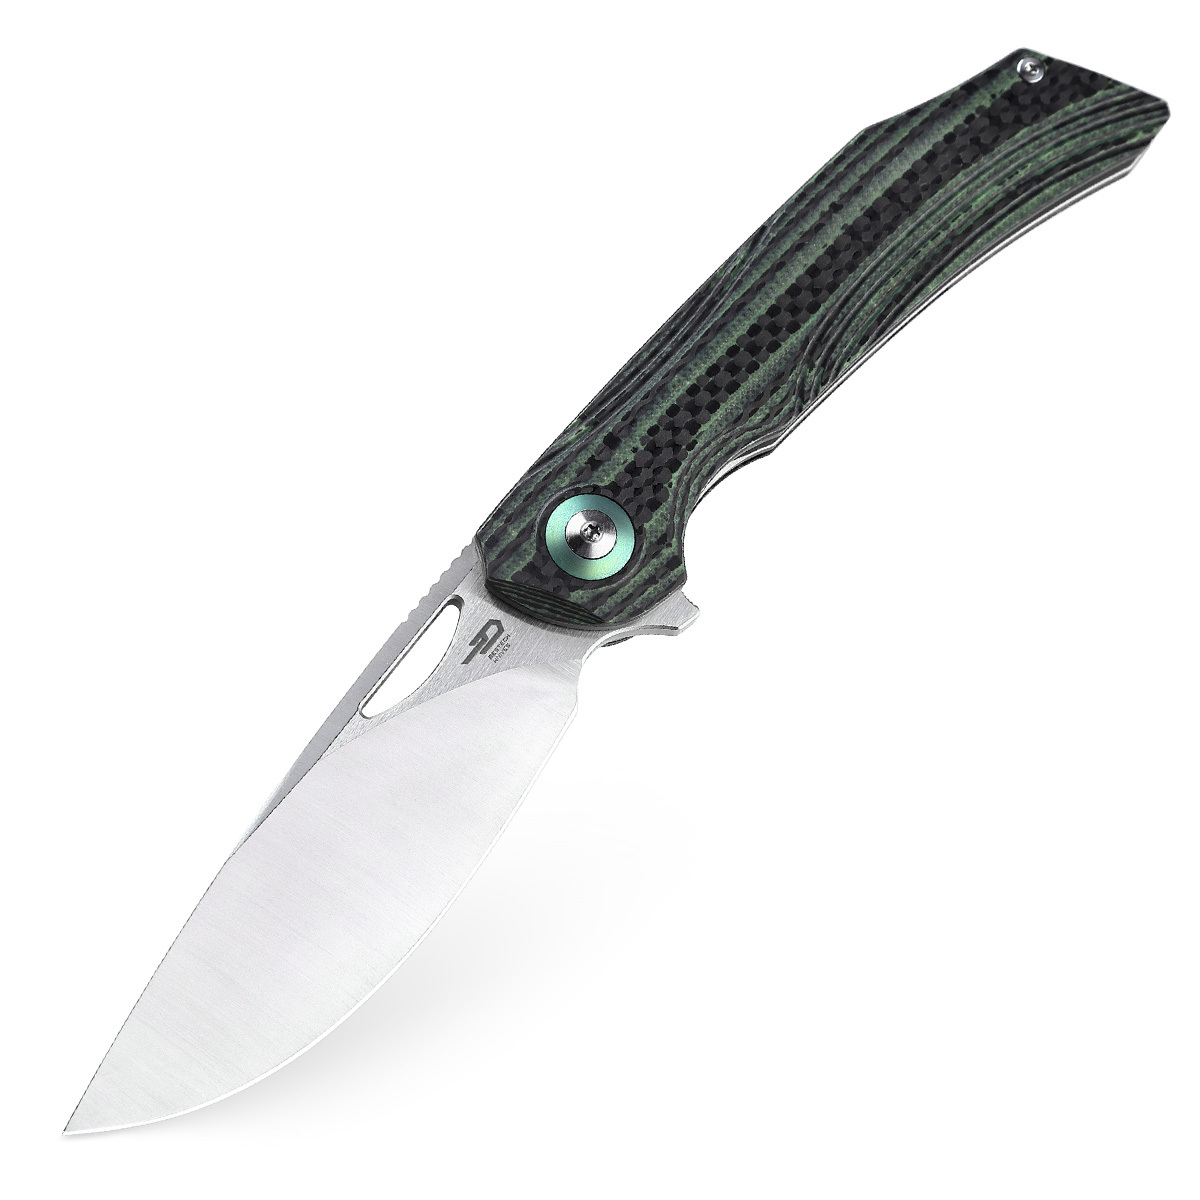 Складной нож Bestech Falko, сталь 154CM, рукоять G10/Carbon fiber, зеленый